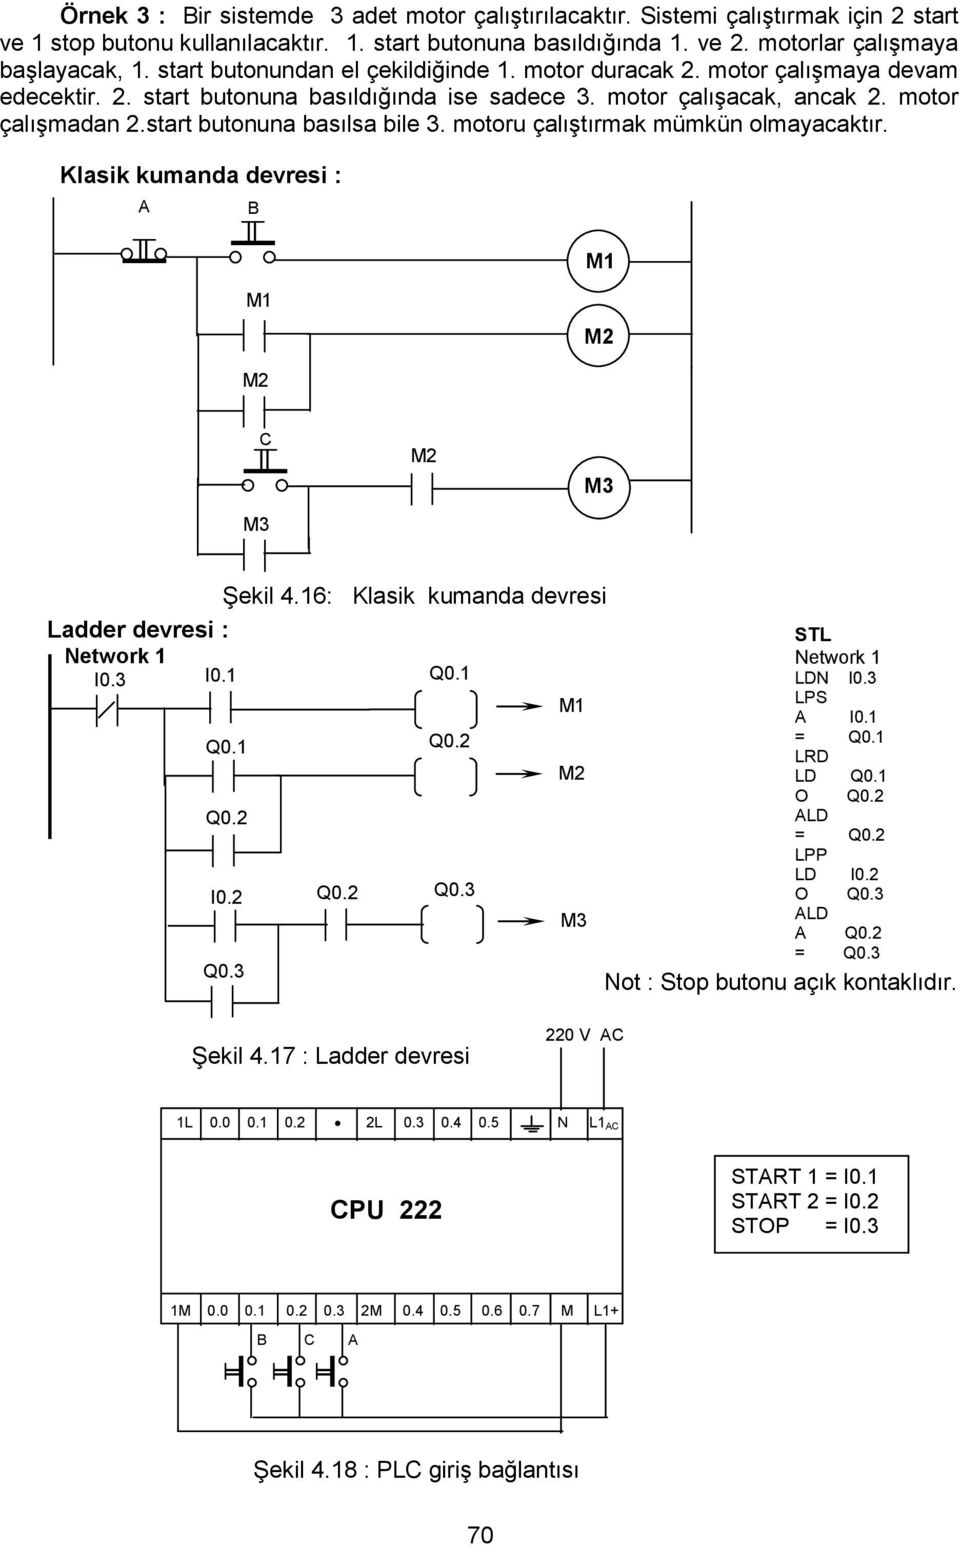 start butonuna basılsa bile 3. motoru çalıştırmak mümkün olmayacaktır. Klasik kumanda devresi : A B C Şekil 4.16: Klasik kumanda devresi Ladder devresi : I0.3 I0.1 STL LDN I0.